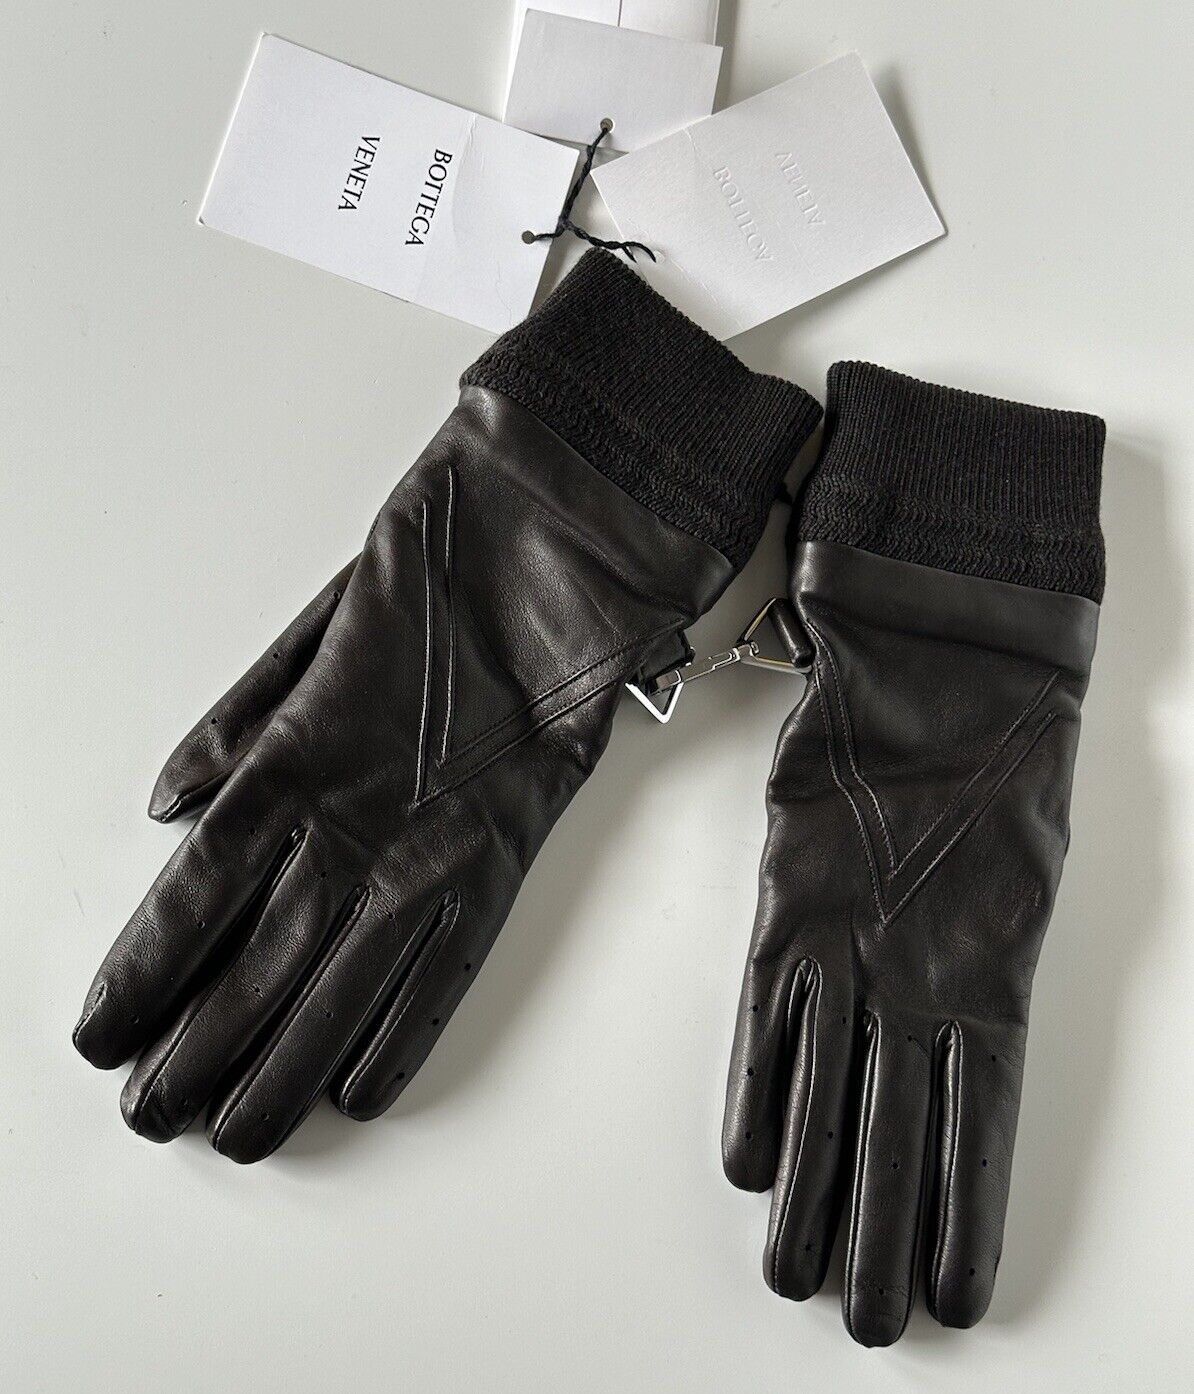 NWT $650 Bottega Veneta Women's Leather Gloves Brown Size 8  (L) Italy 690300